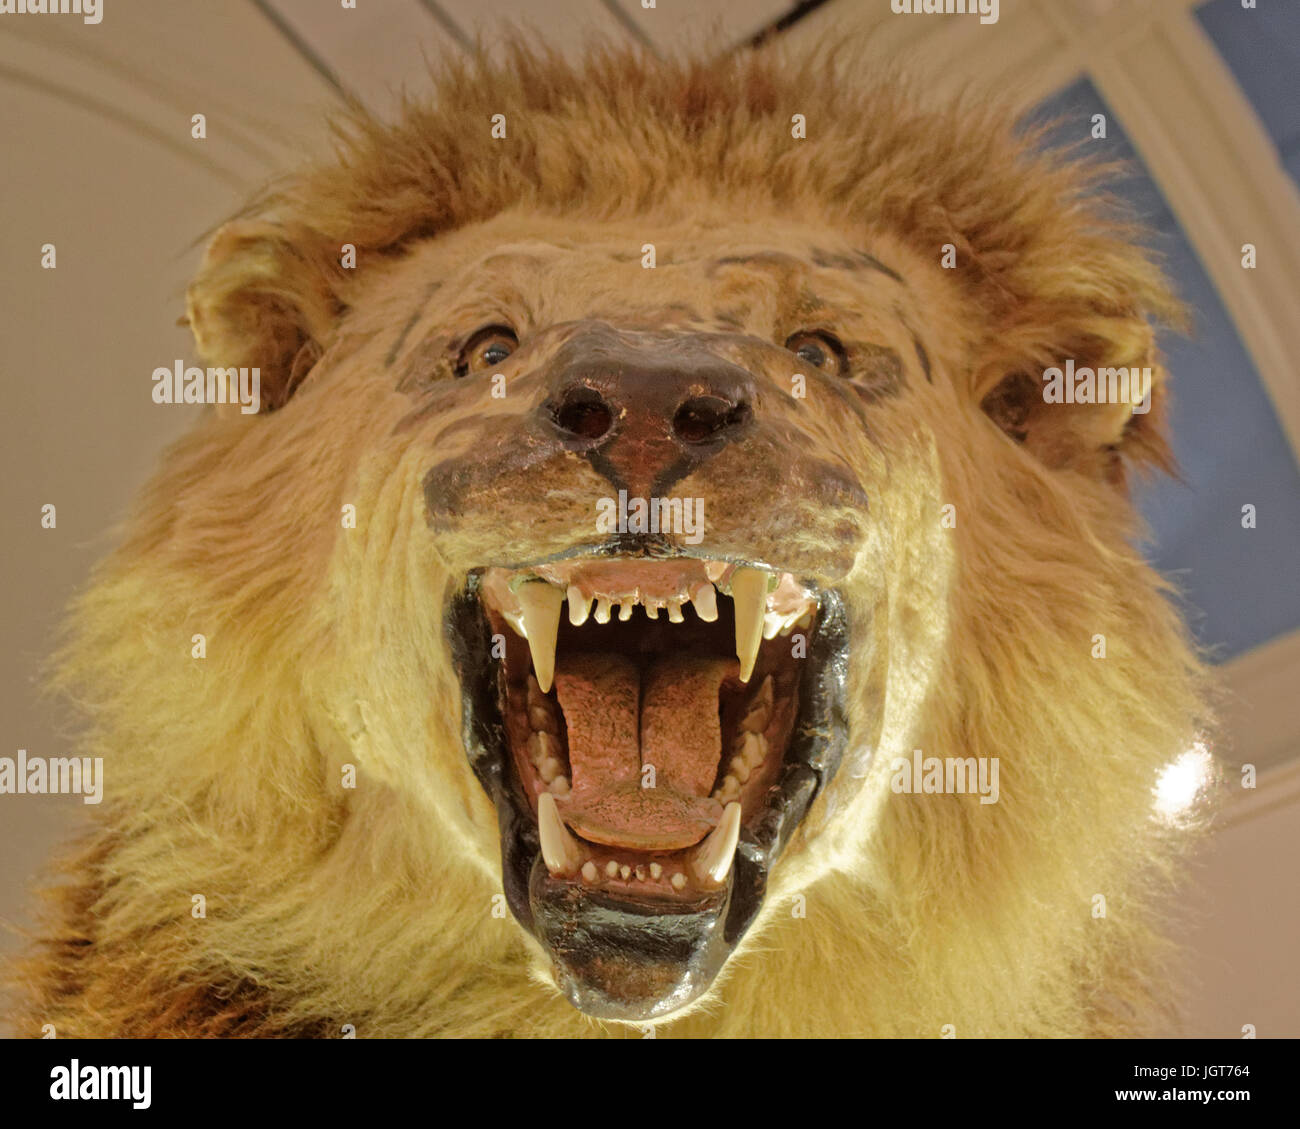 Nahaufnahme eines männlichen Löwen Kopf mit Mund offen Backen auseinander, Knurren, Zähne und Zunge Stockfoto